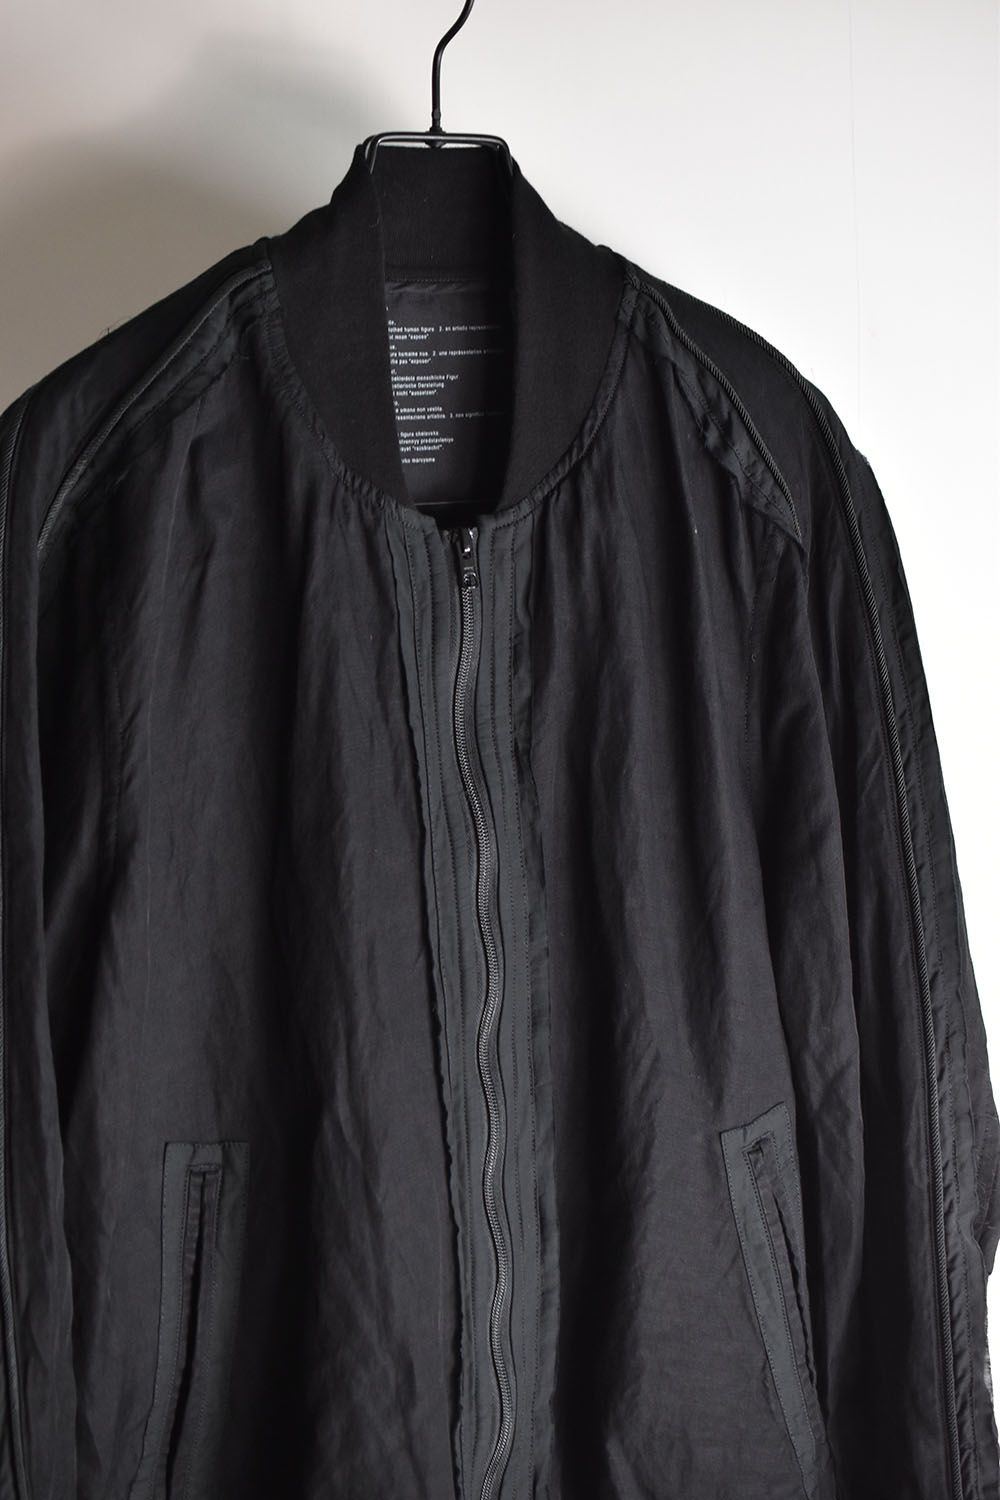 nude:masahiko maruyama - Garment Dyed Bomber Jacket